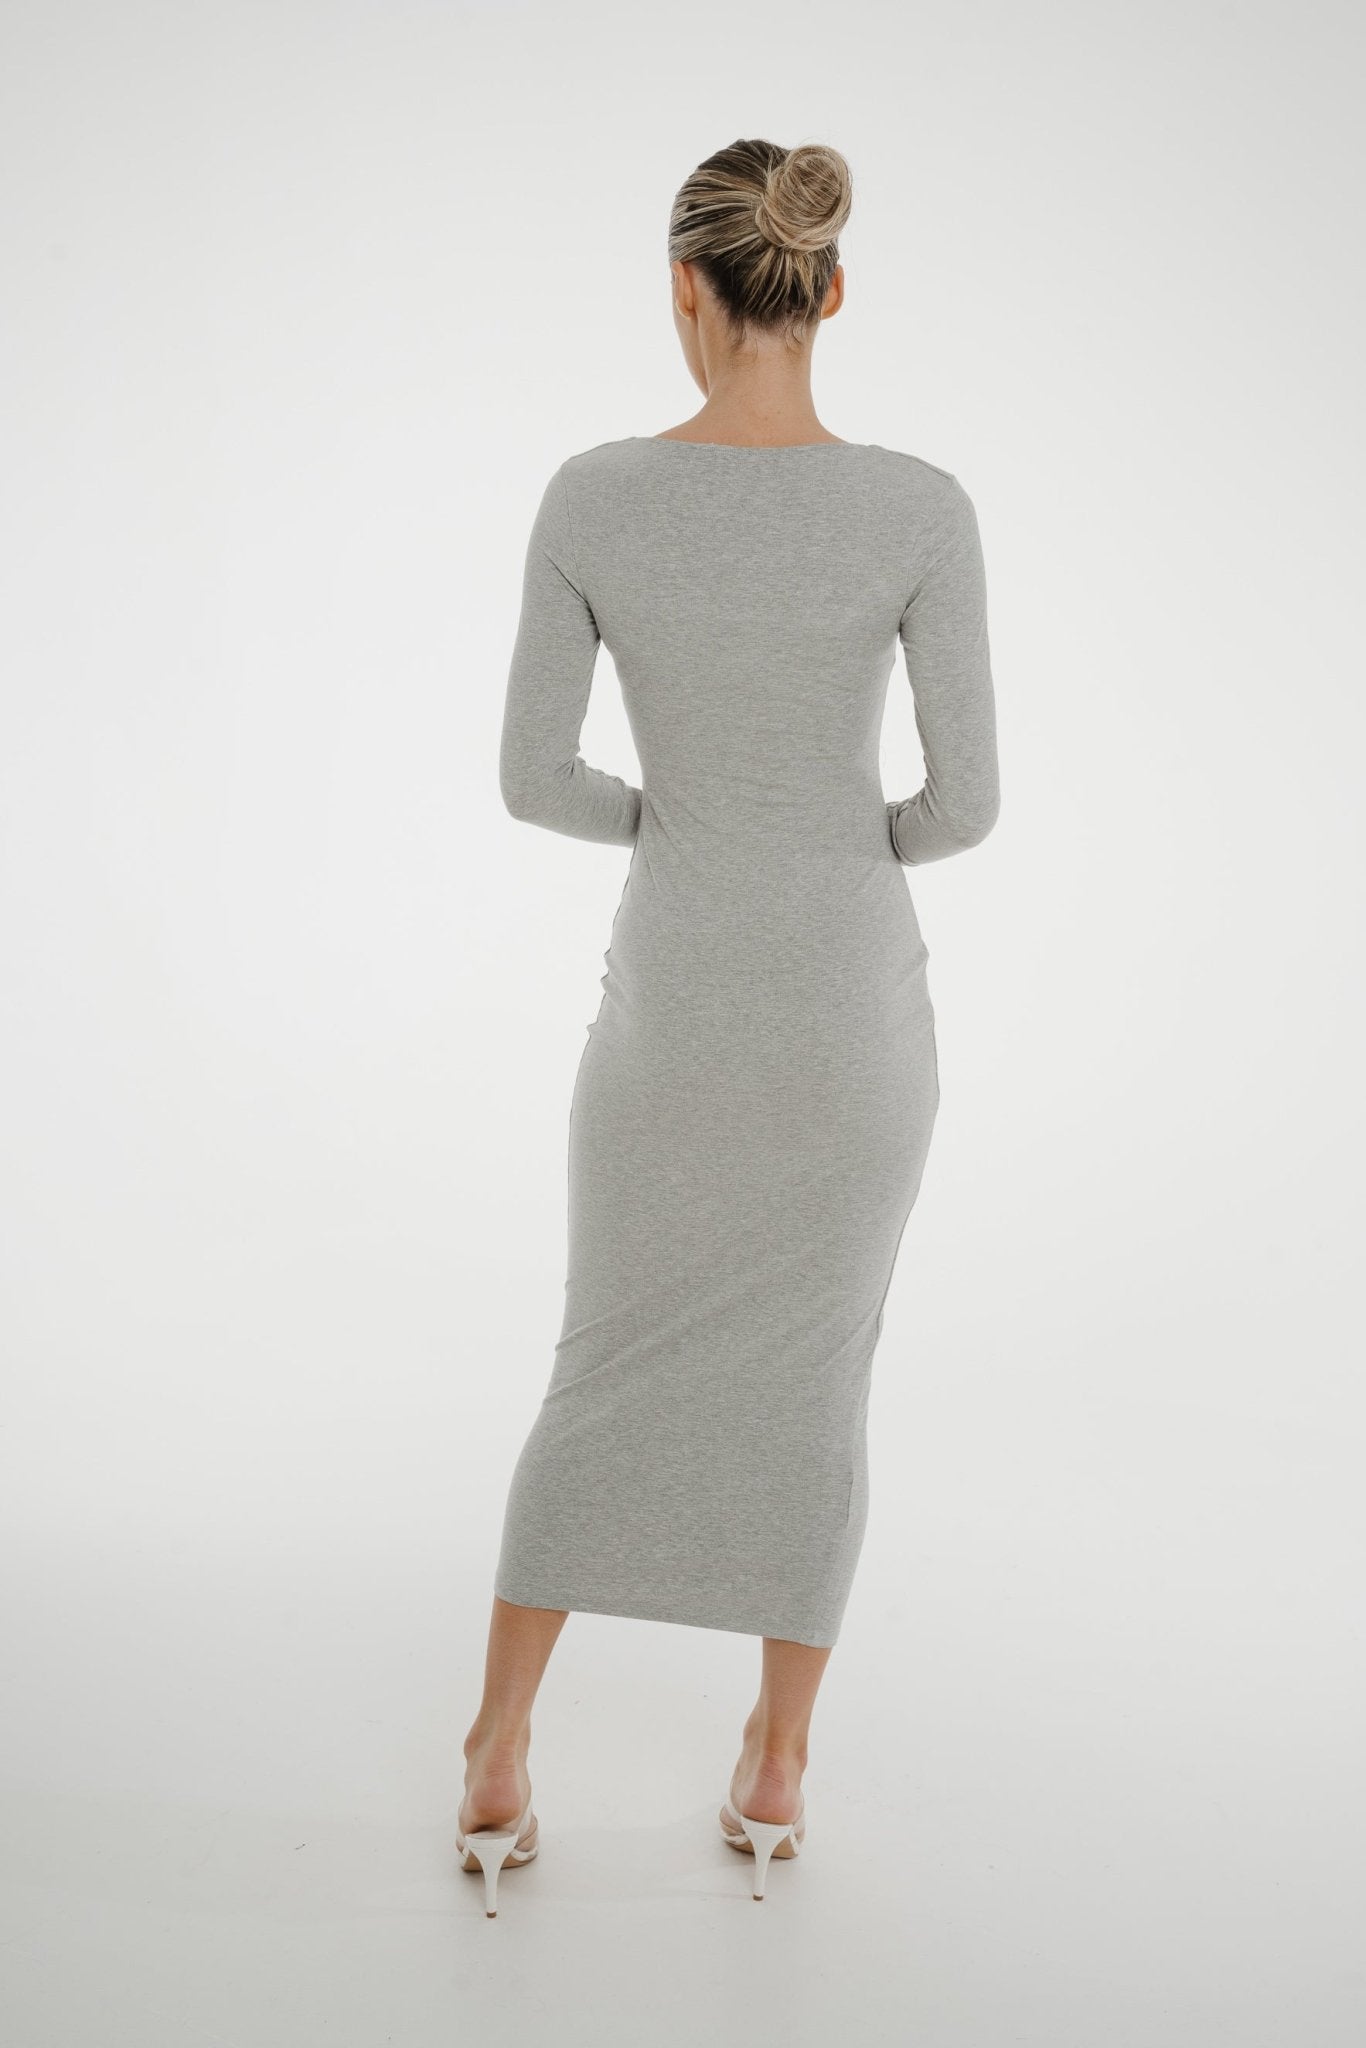 Kate Midi Dress In Grey - The Walk in Wardrobe